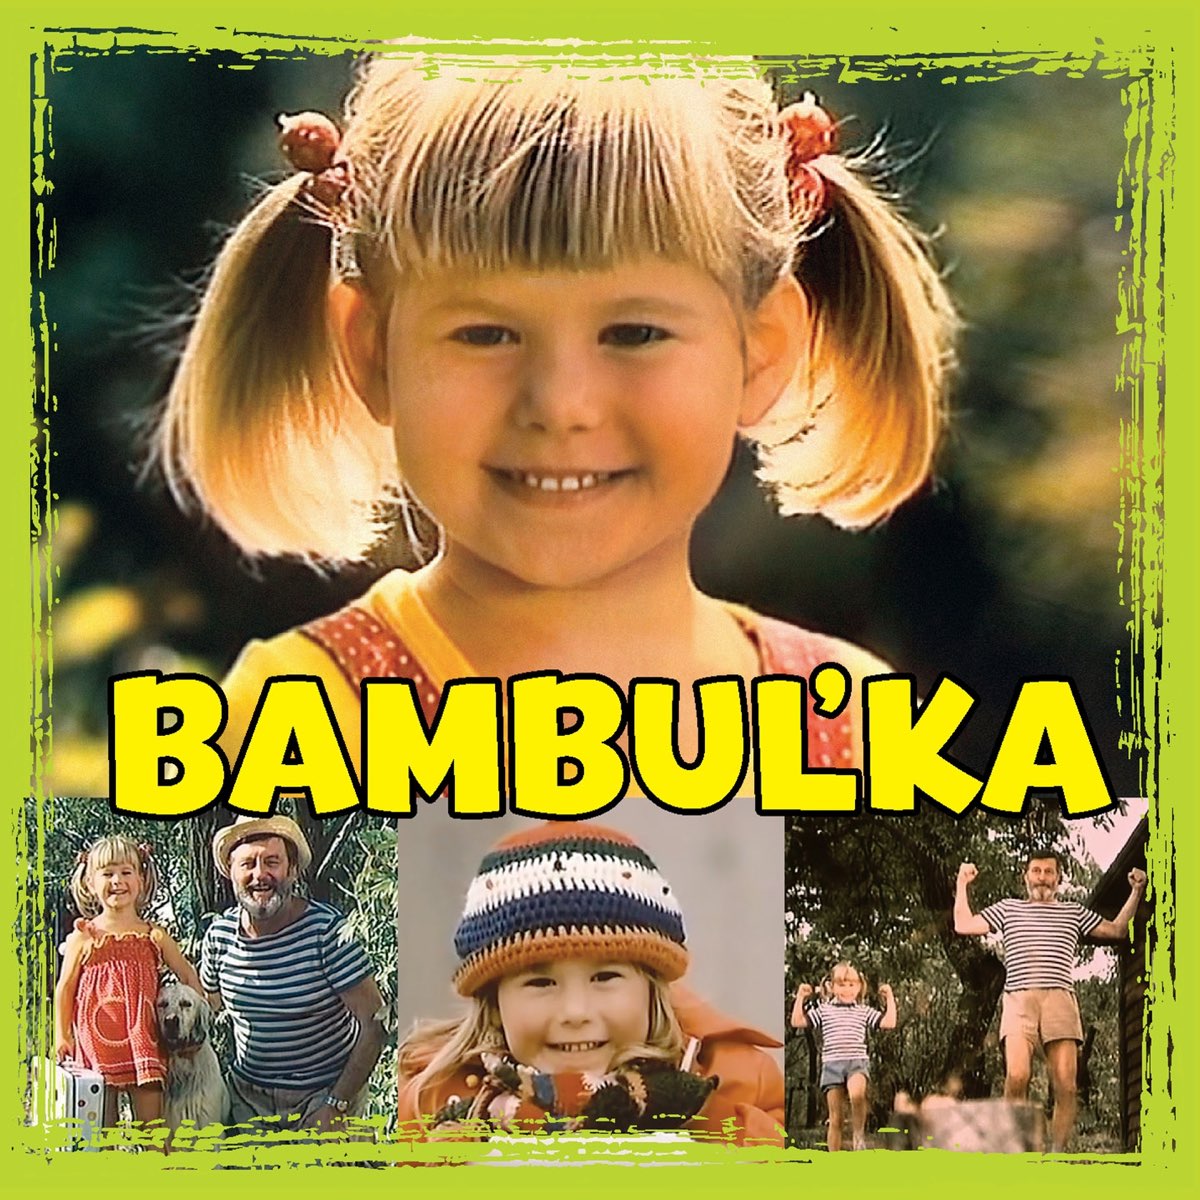 Bambuľka - Album by Július Pántik & Alena Antalová - Apple Music